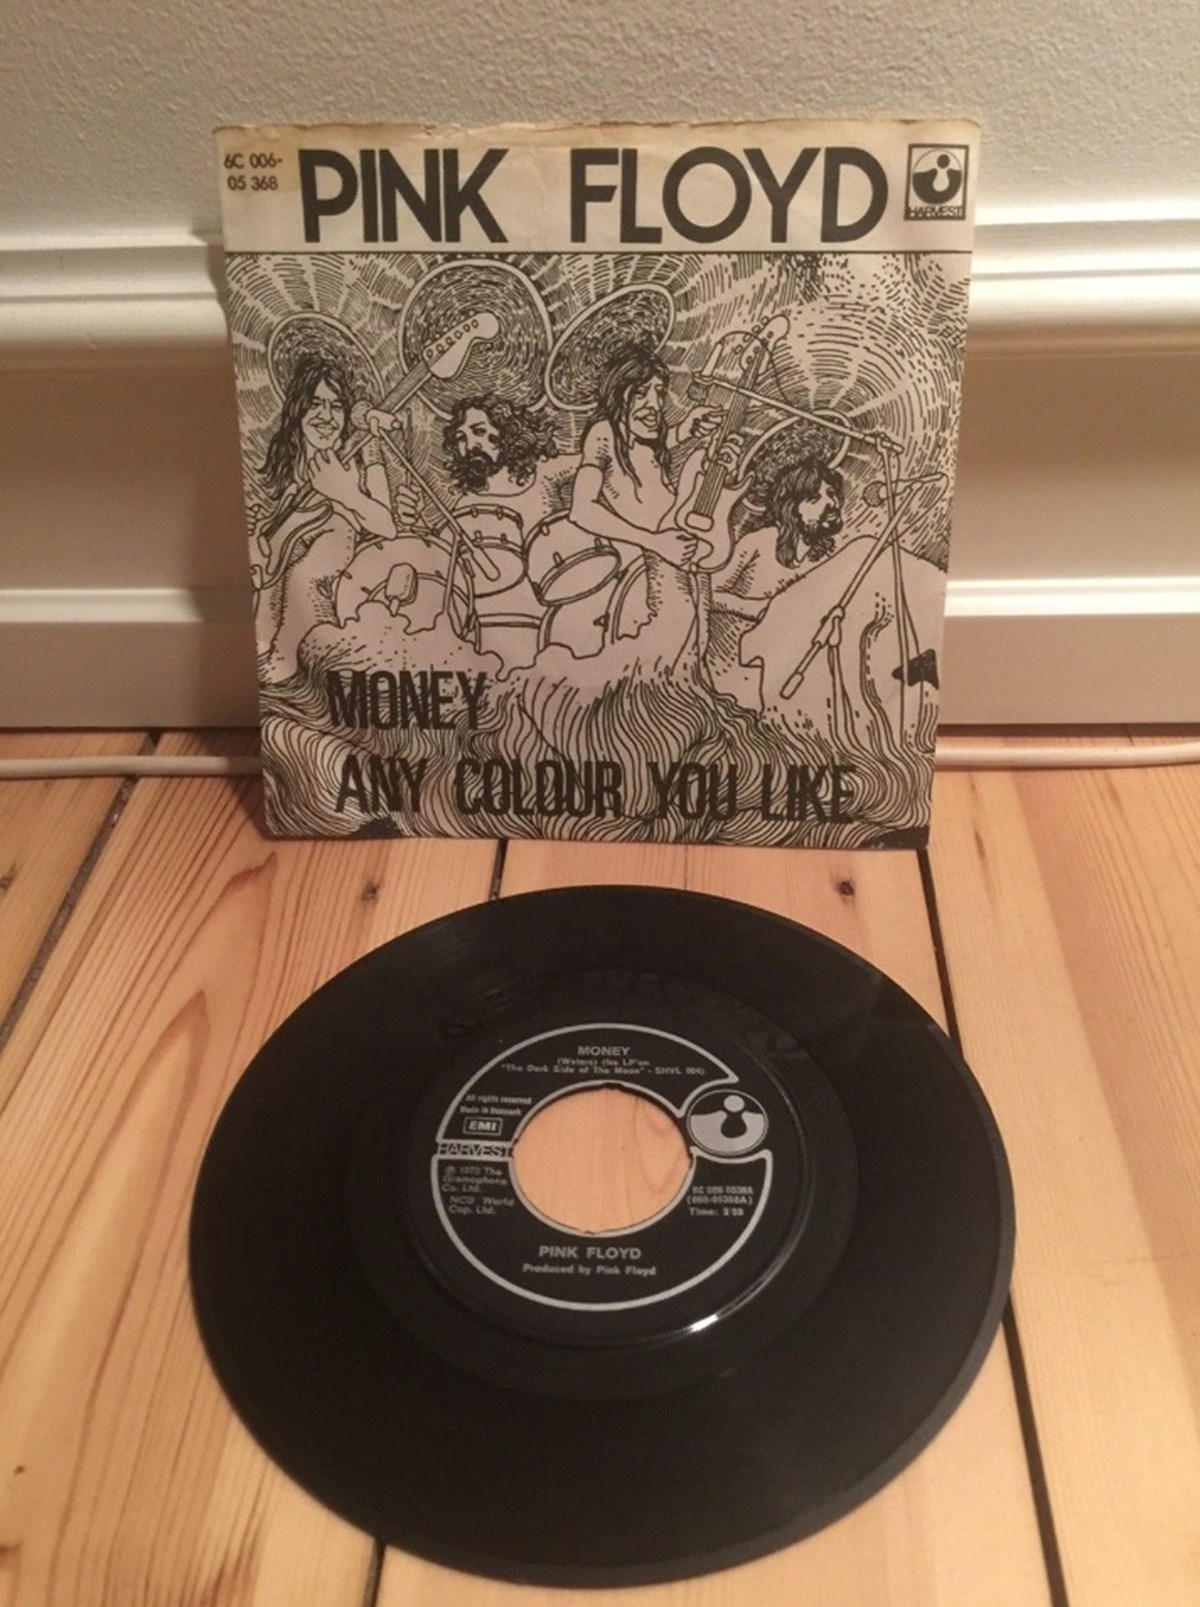 Vinyl | Ekspert: Disse gamle vinyler er mange penge værd dag